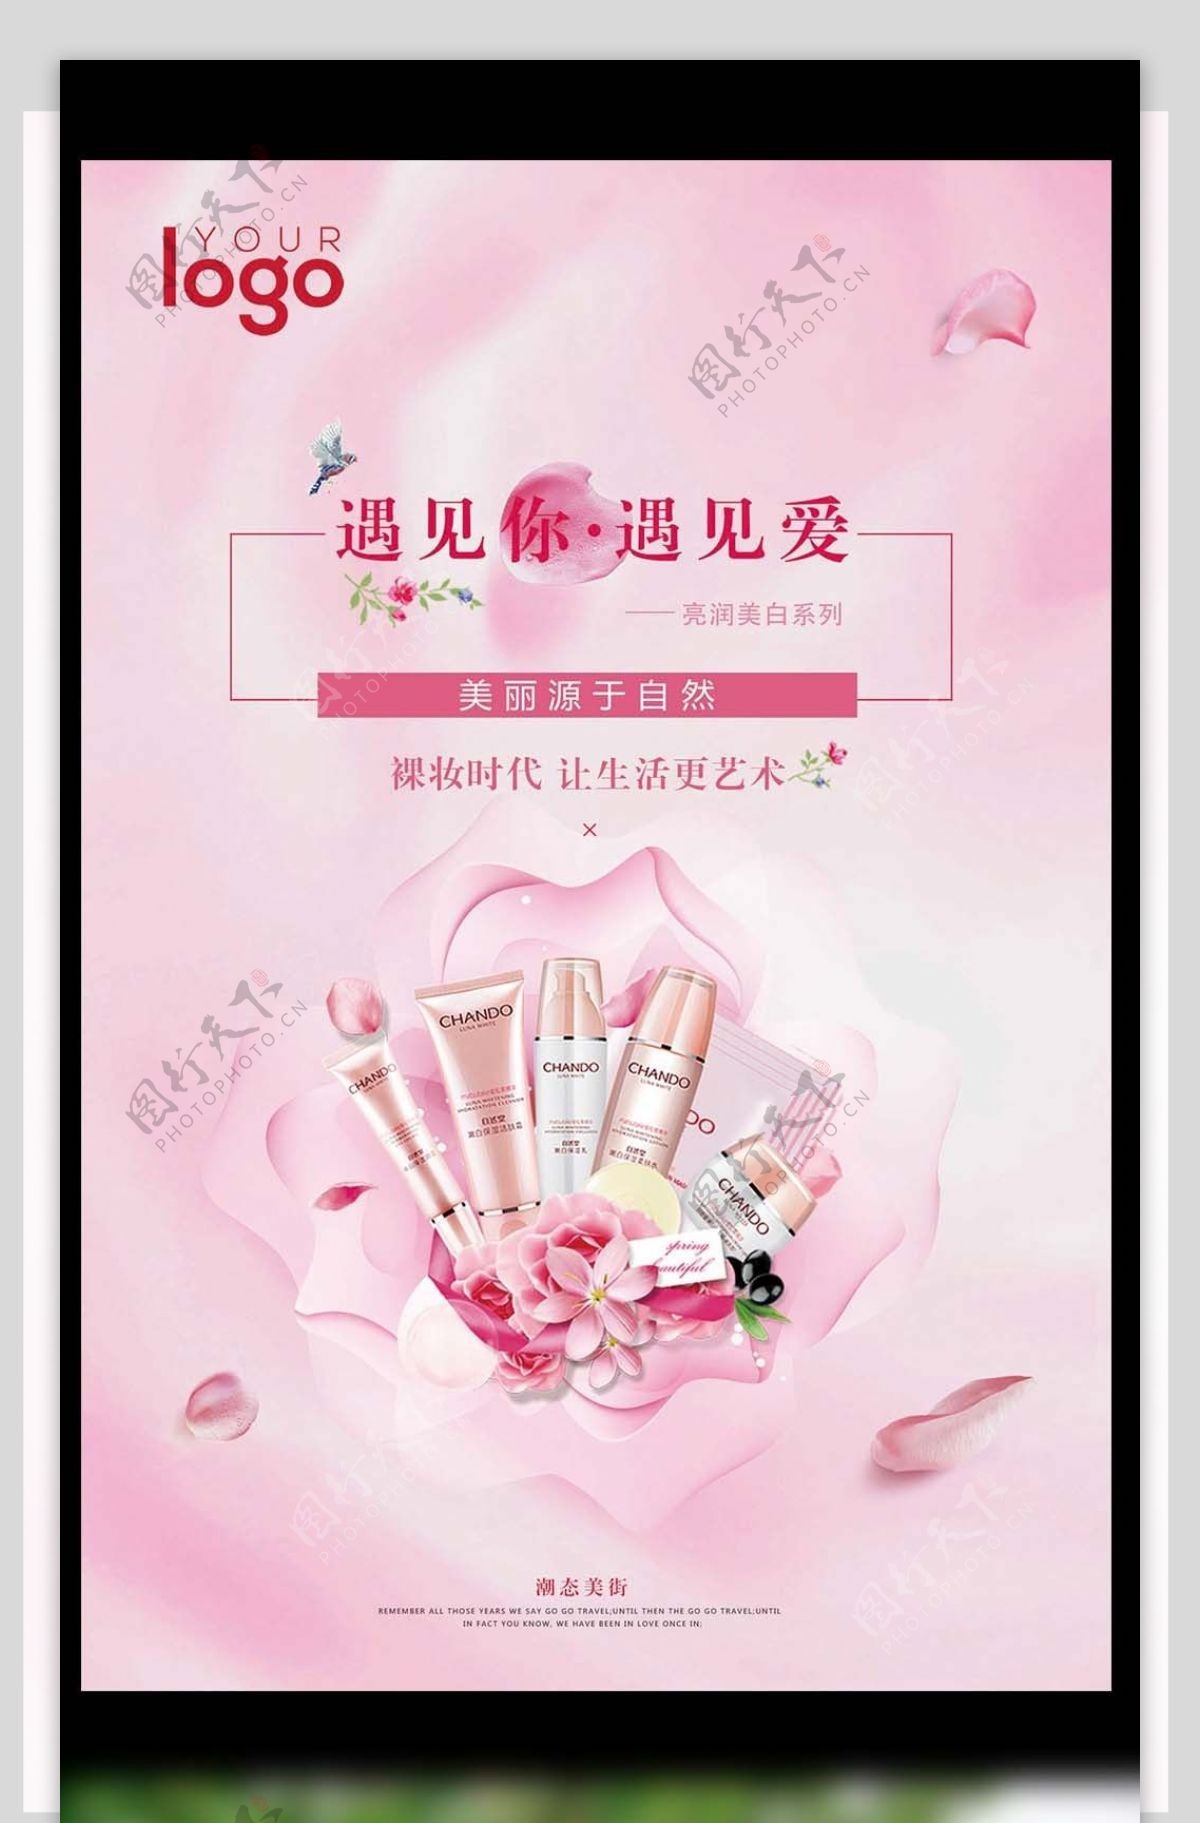 2017年粉色浪漫化妆品宣传海报设计